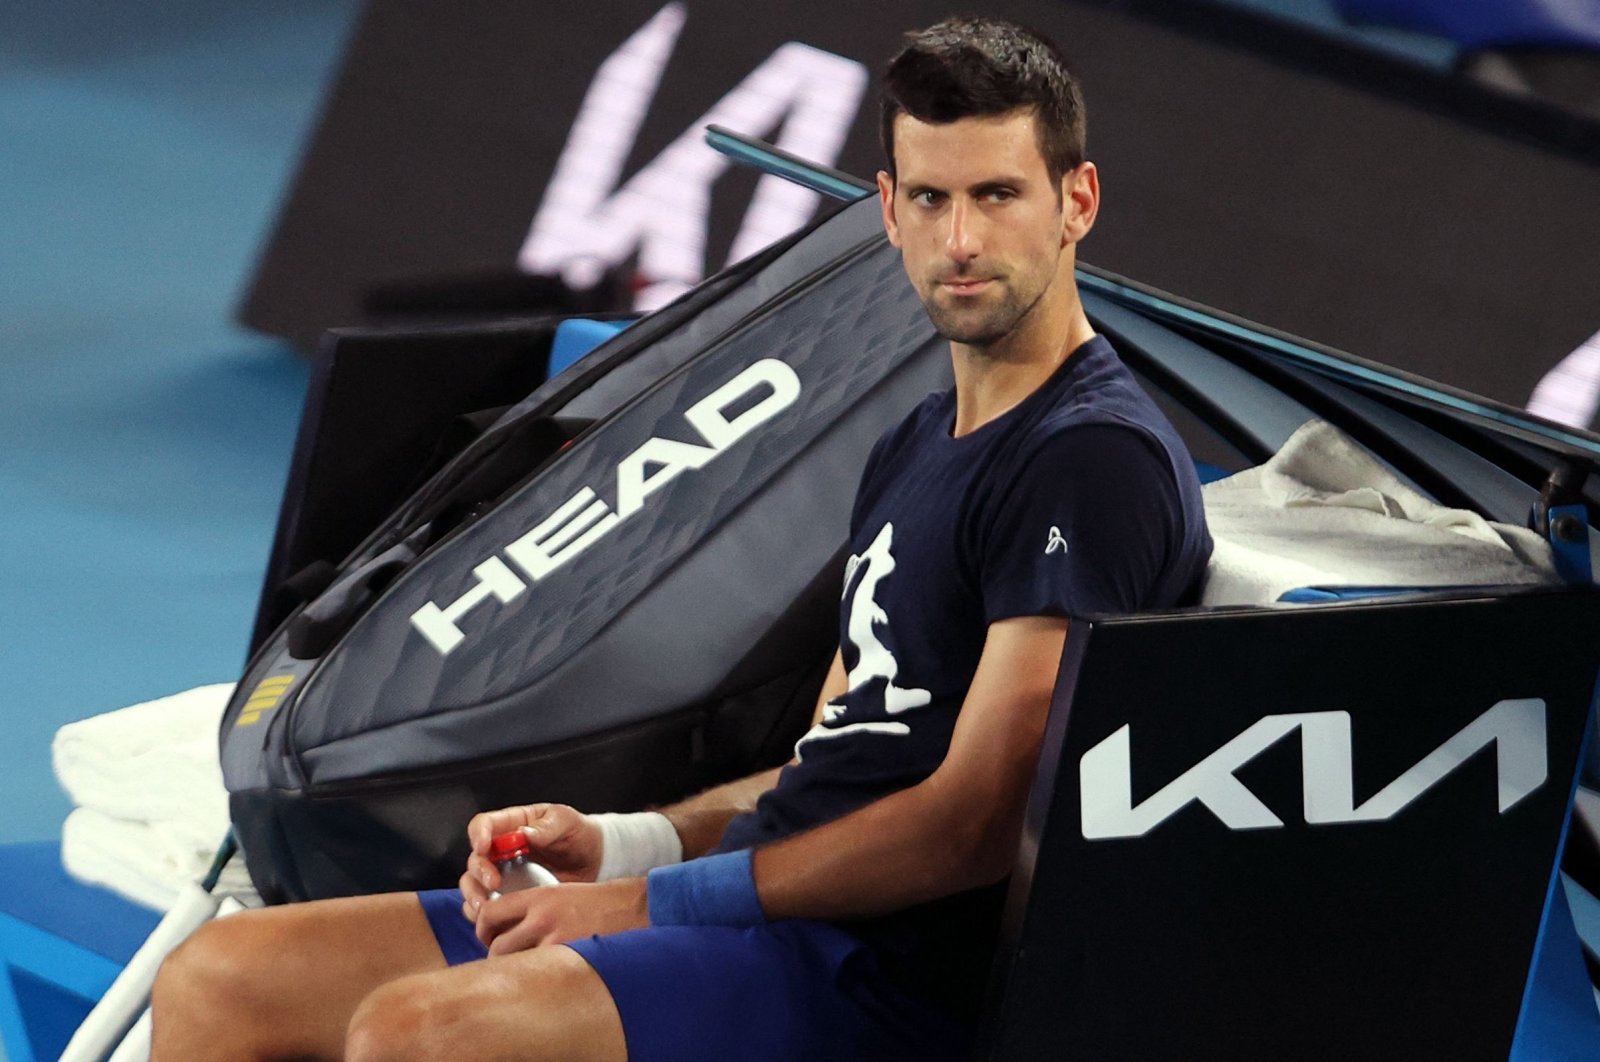 Australia batalkan visa Djokovic untuk kedua kalinya karena jab COVID-19